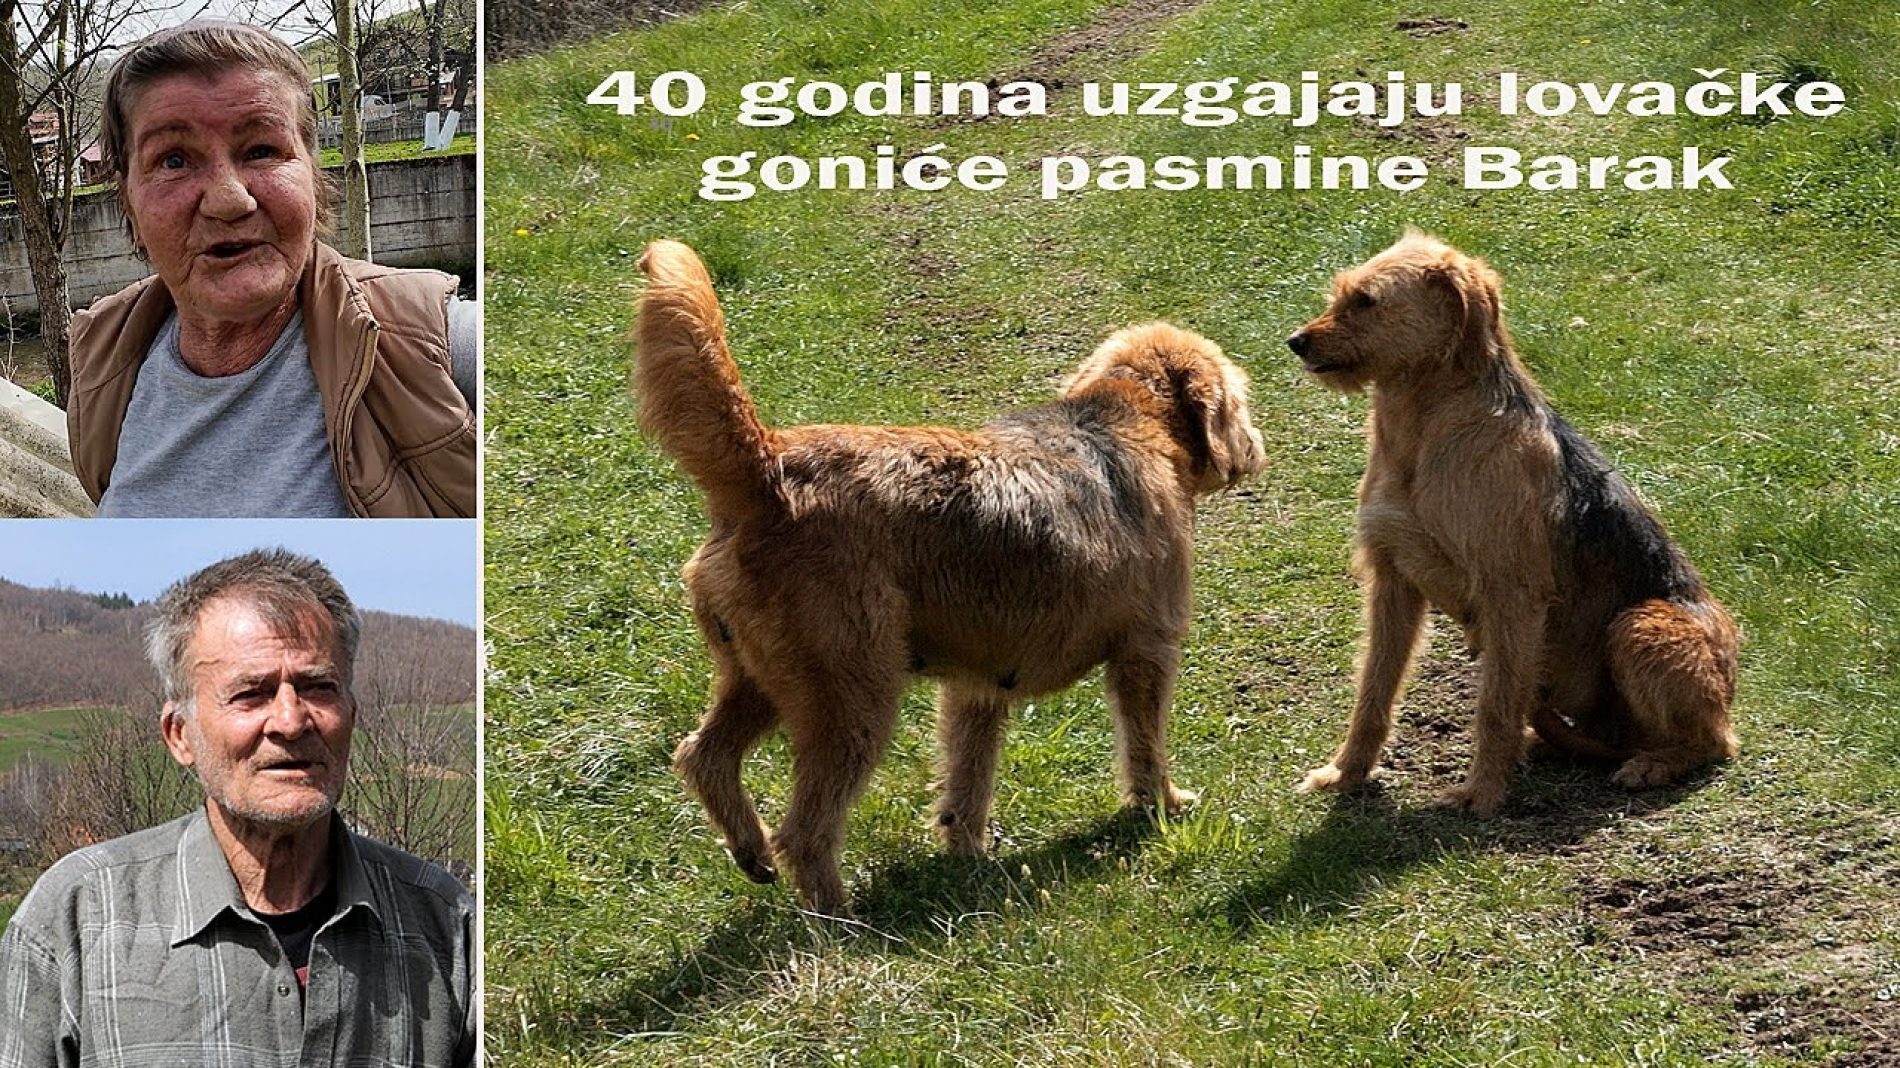 Bračni par više od 40 godina uzgaja bosanske goniče pasmine Barak